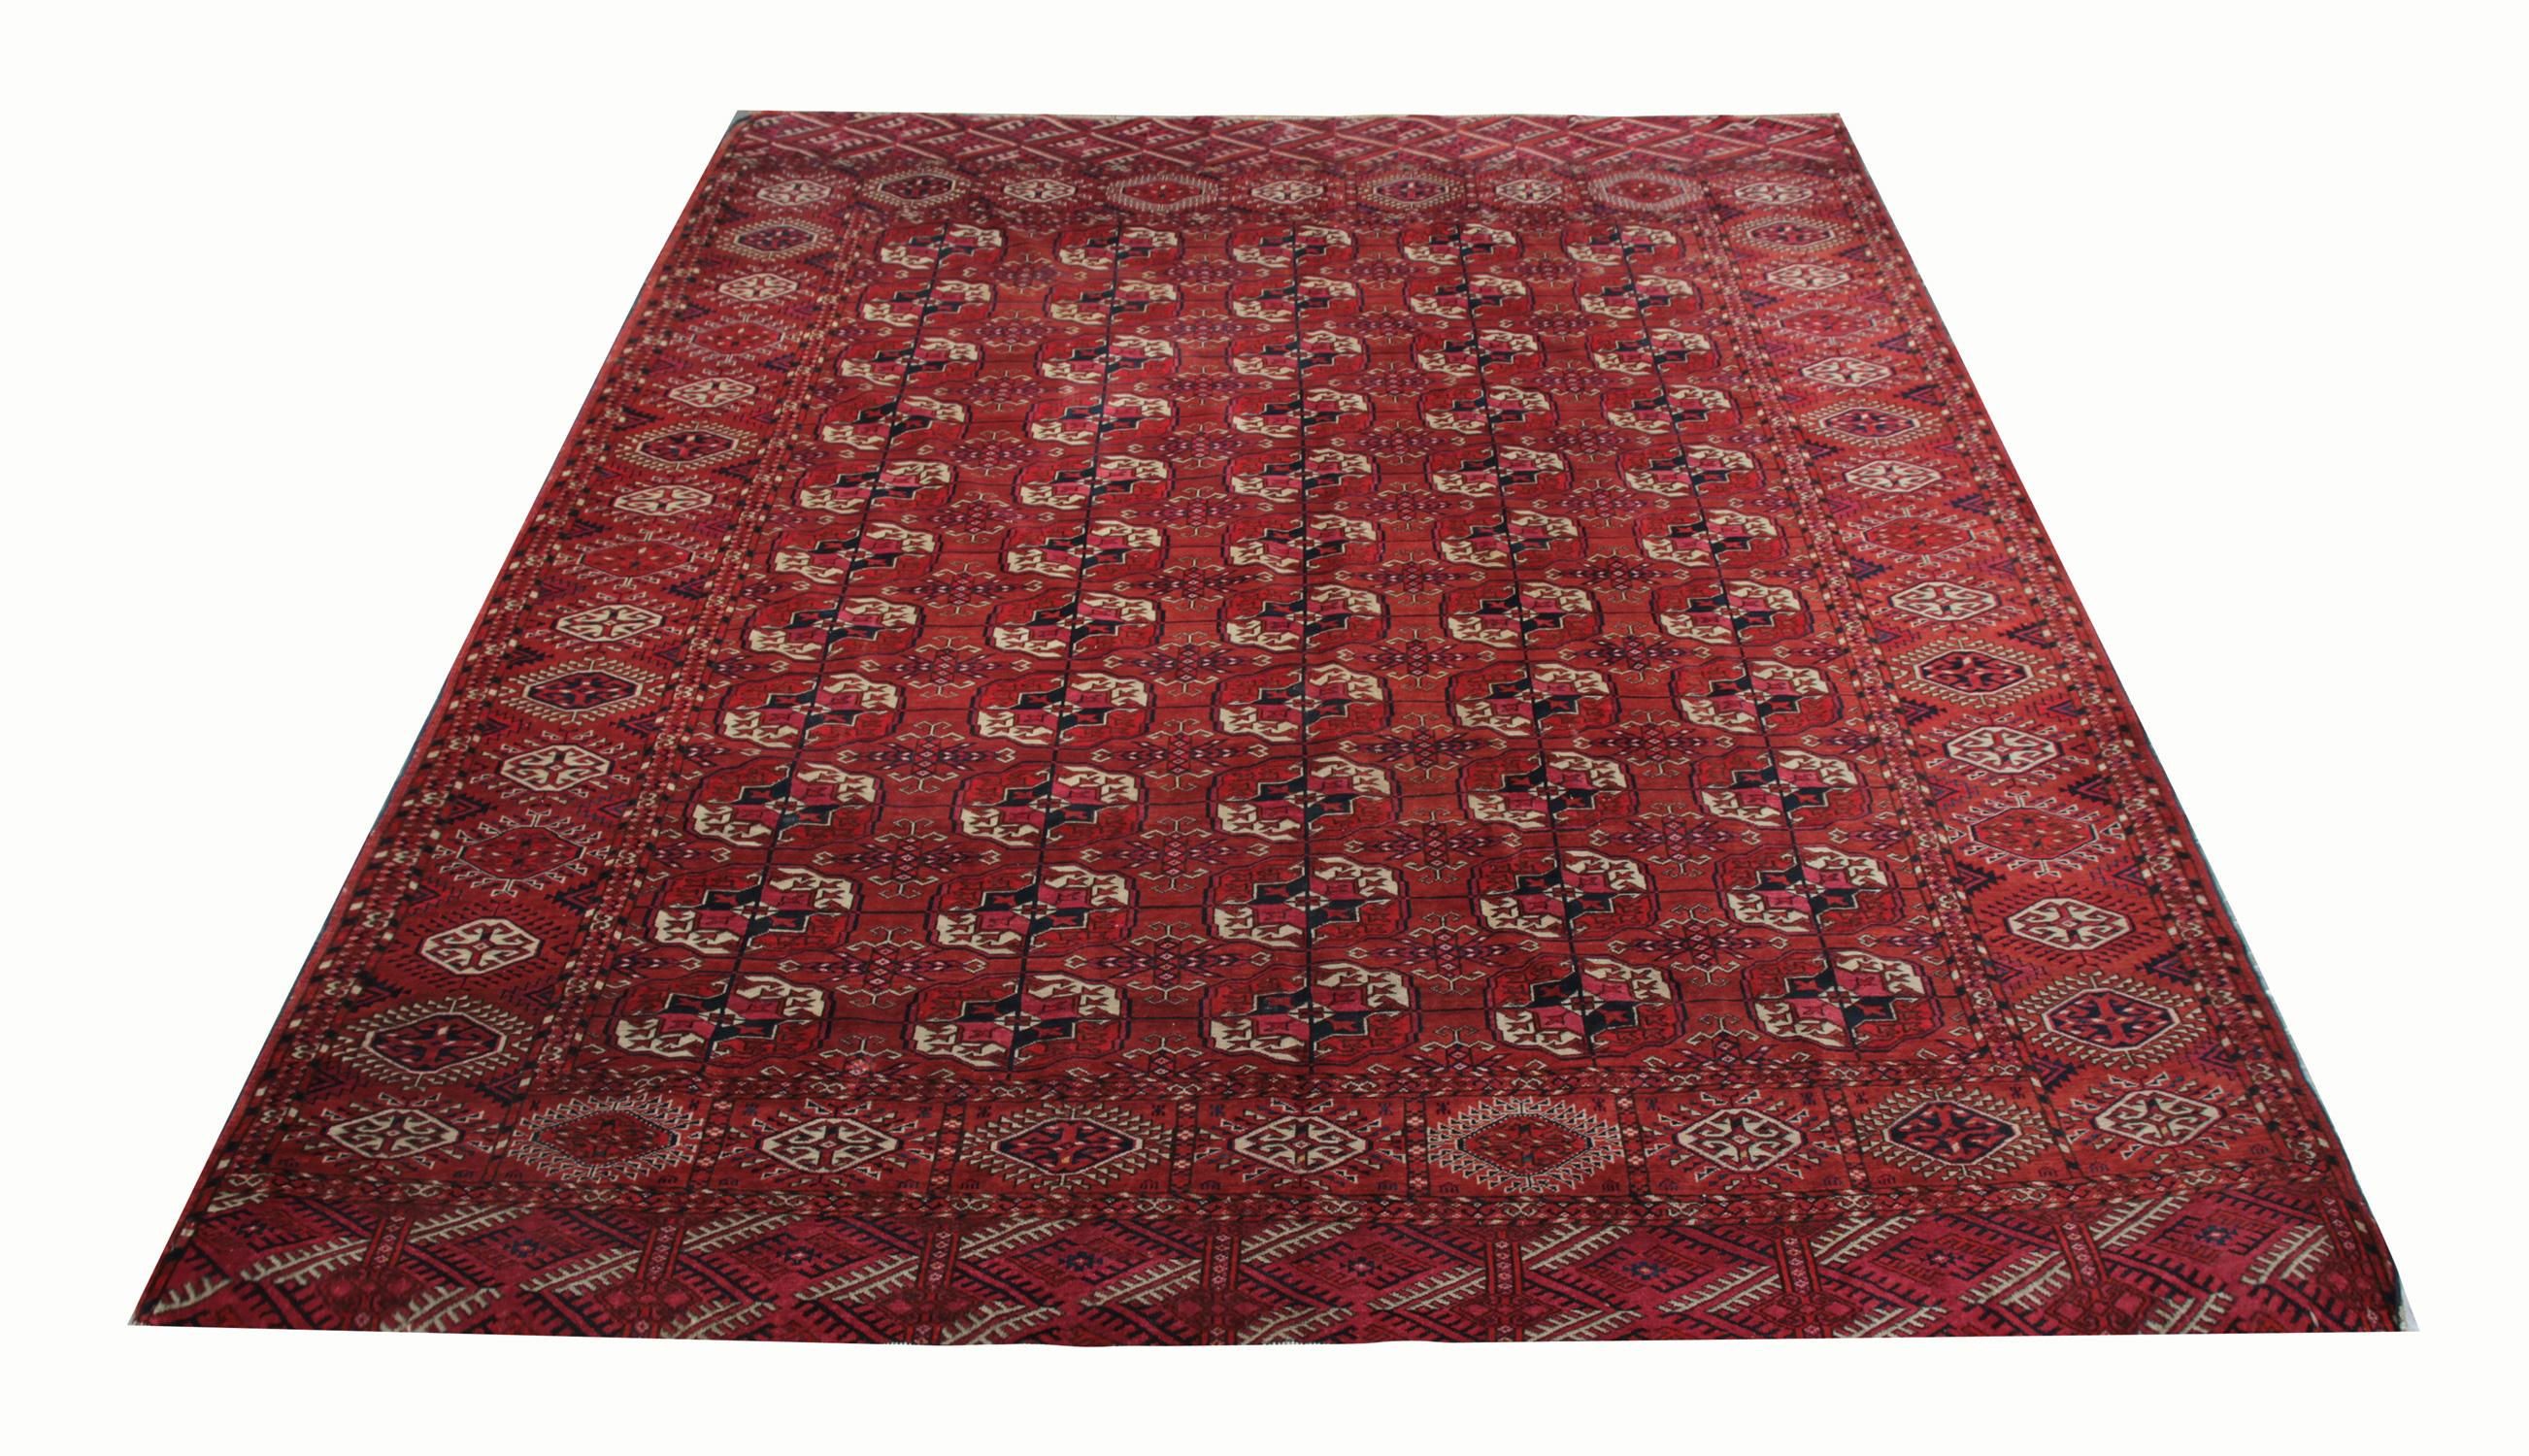 Dieser handgefertigte Teppich aus antiker turkmenischer Wolle wurde unter Verwendung traditioneller pflanzlicher Färbemittel von turkmenischen Stammesangehörigen handgefertigt. Dieser Teppich ist überwiegend rot und hat ein sich wiederholendes